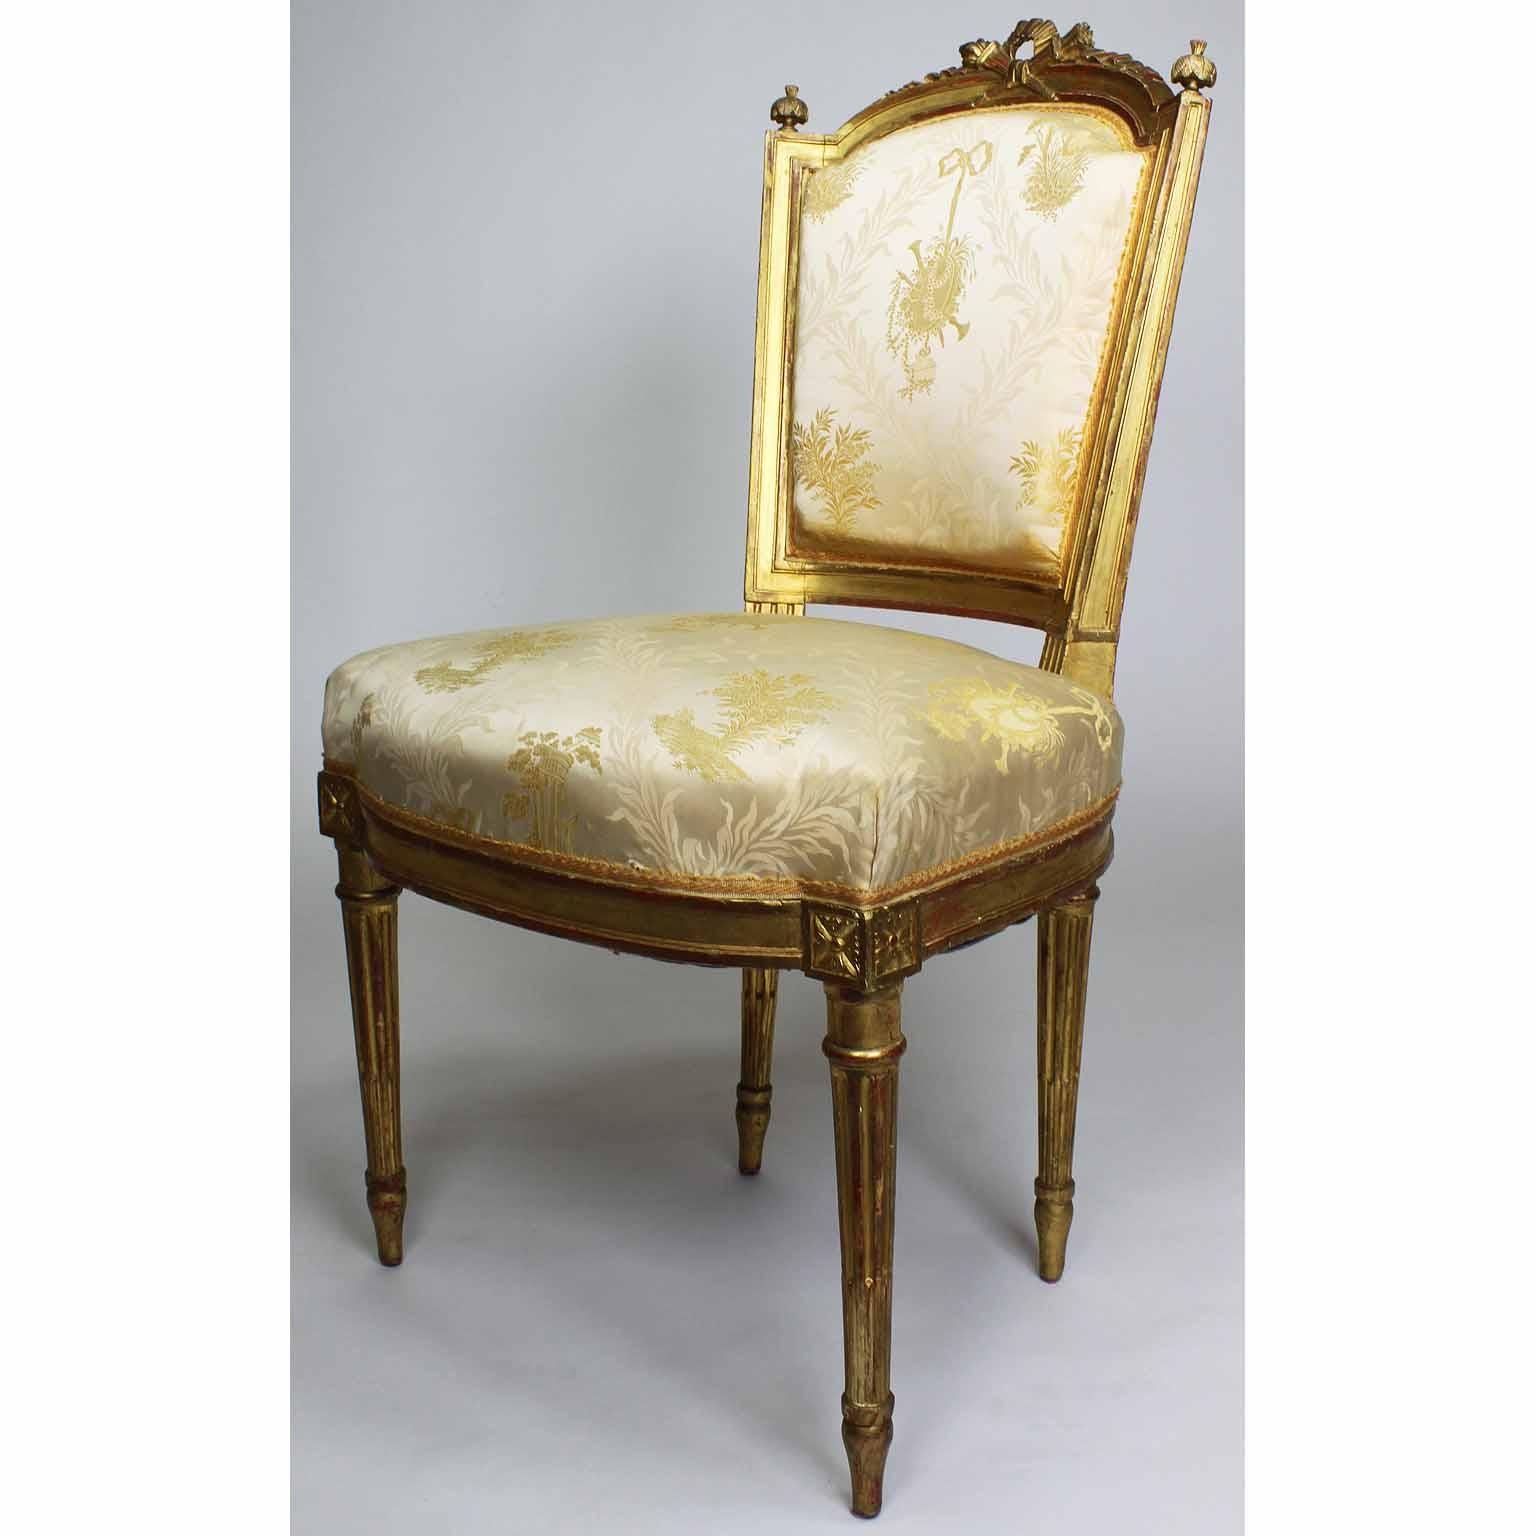 Zwei französische Boudoir-Stühle im Louis-XVI-Stil aus vergoldetem Holz des 19. Jahrhunderts. Der niedrige Rahmen aus geschnitztem Goldholz mit einer gepolsterten, sich verjüngenden Rückenlehne, die mit geschnitzten, gekreuzten Fackeln und einem